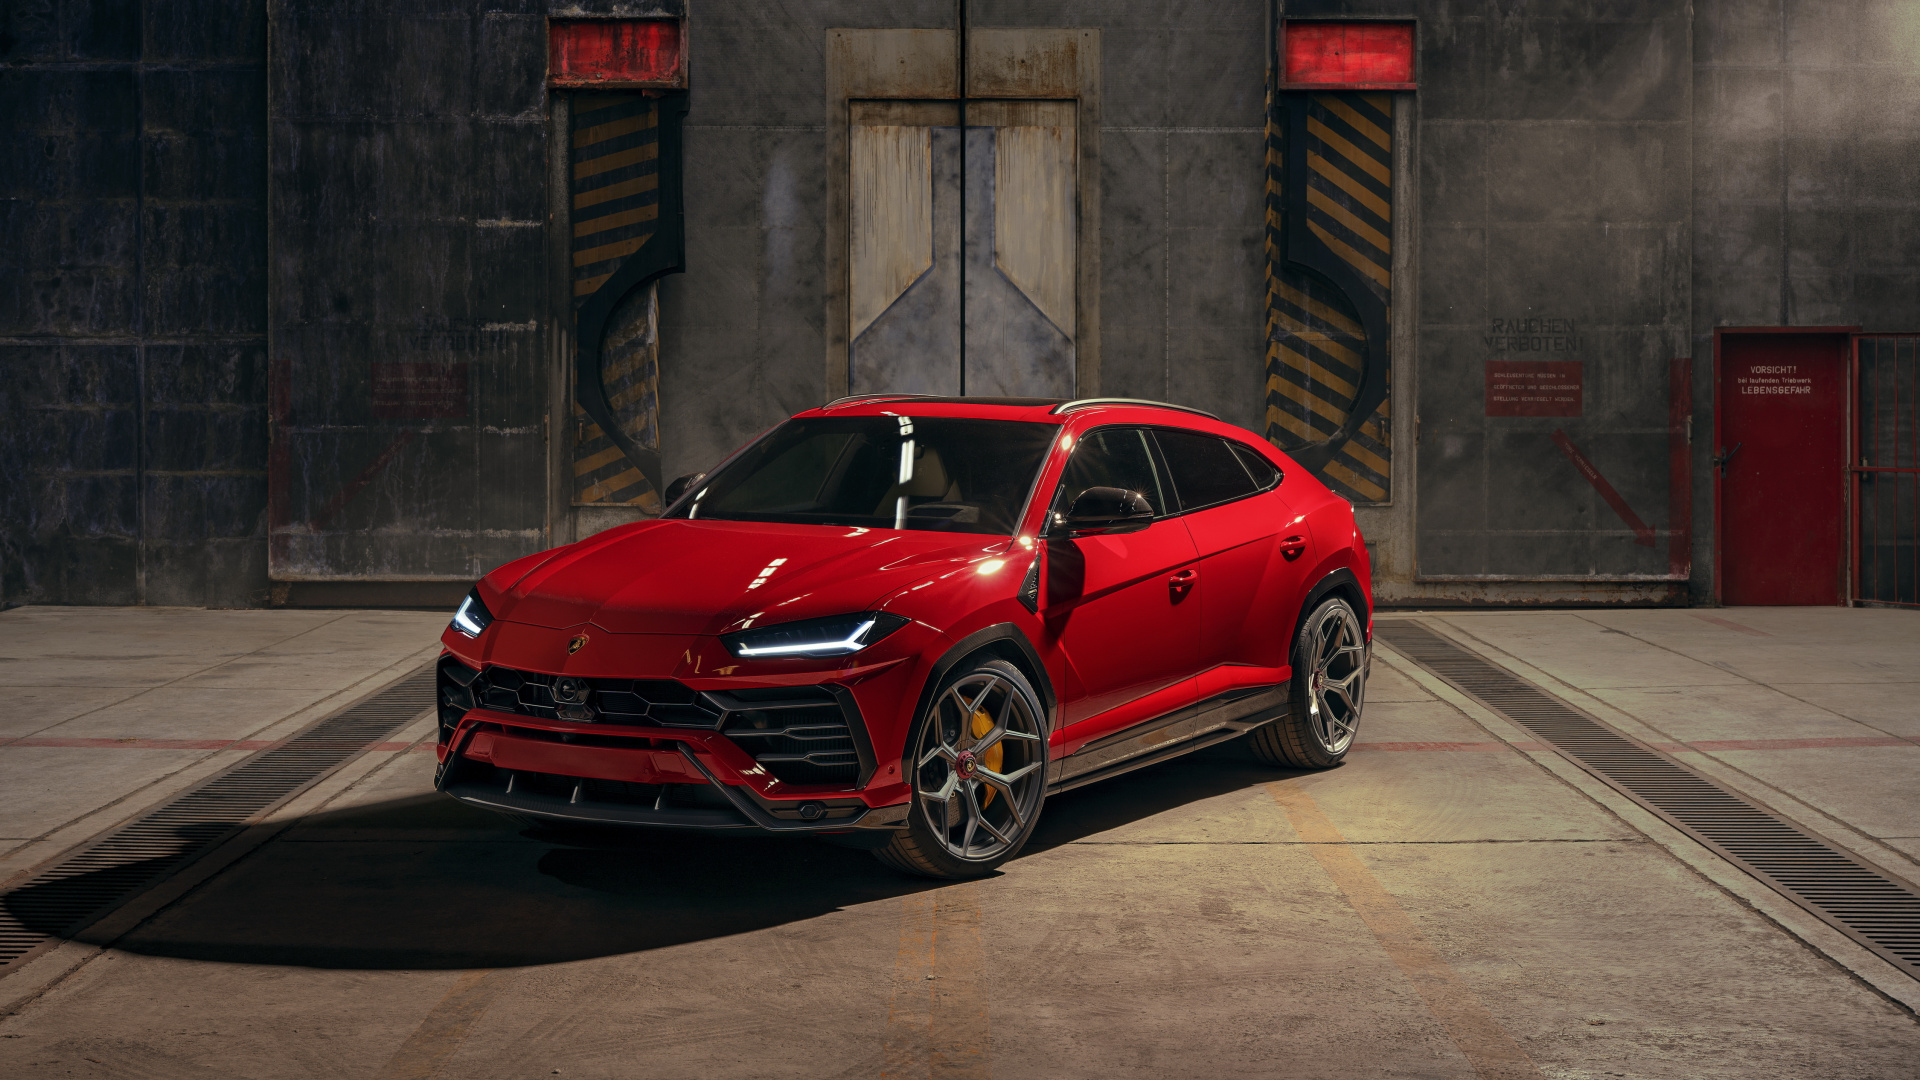 2019 Car, Red Car, Lamborghini Urus, Wallpaper - Lamborghini Urus 2020 Red - HD Wallpaper 